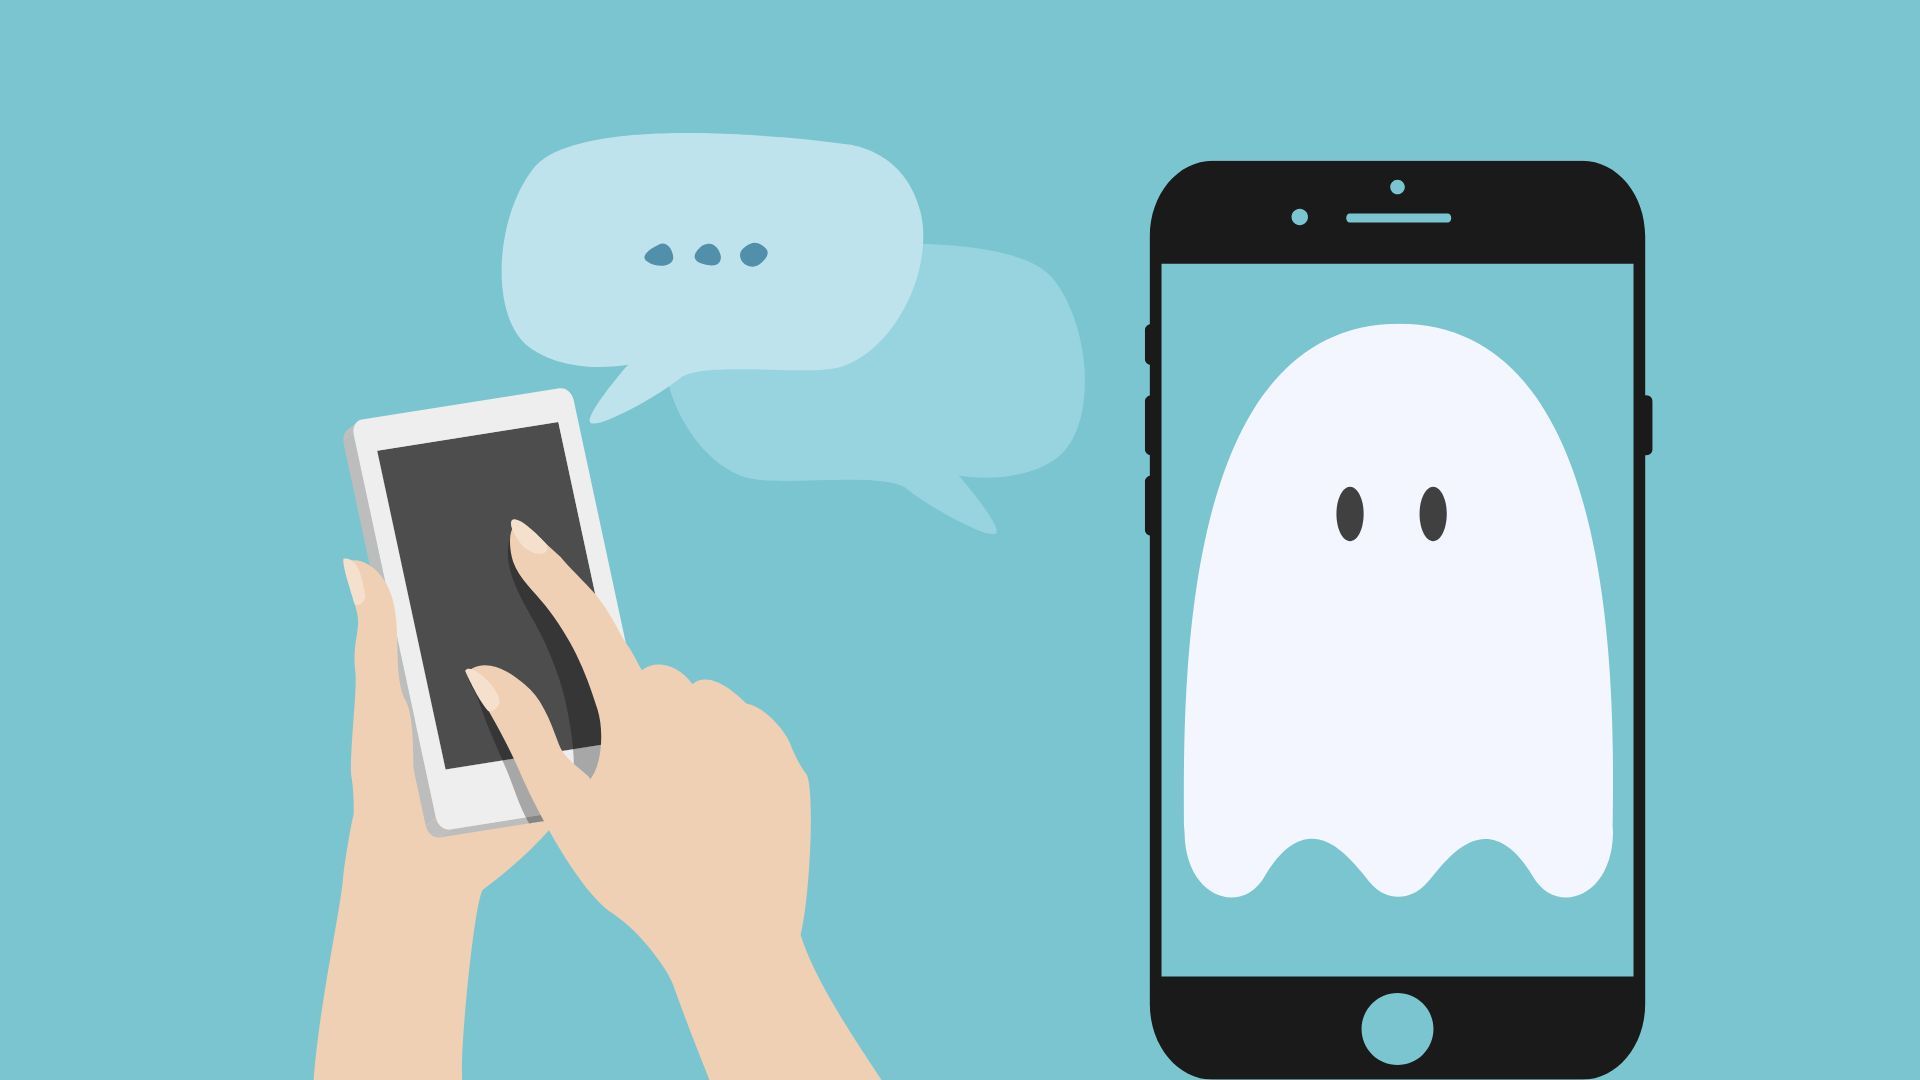 La interrupción de la comunicación constituye la característica clave del 'ghosting'